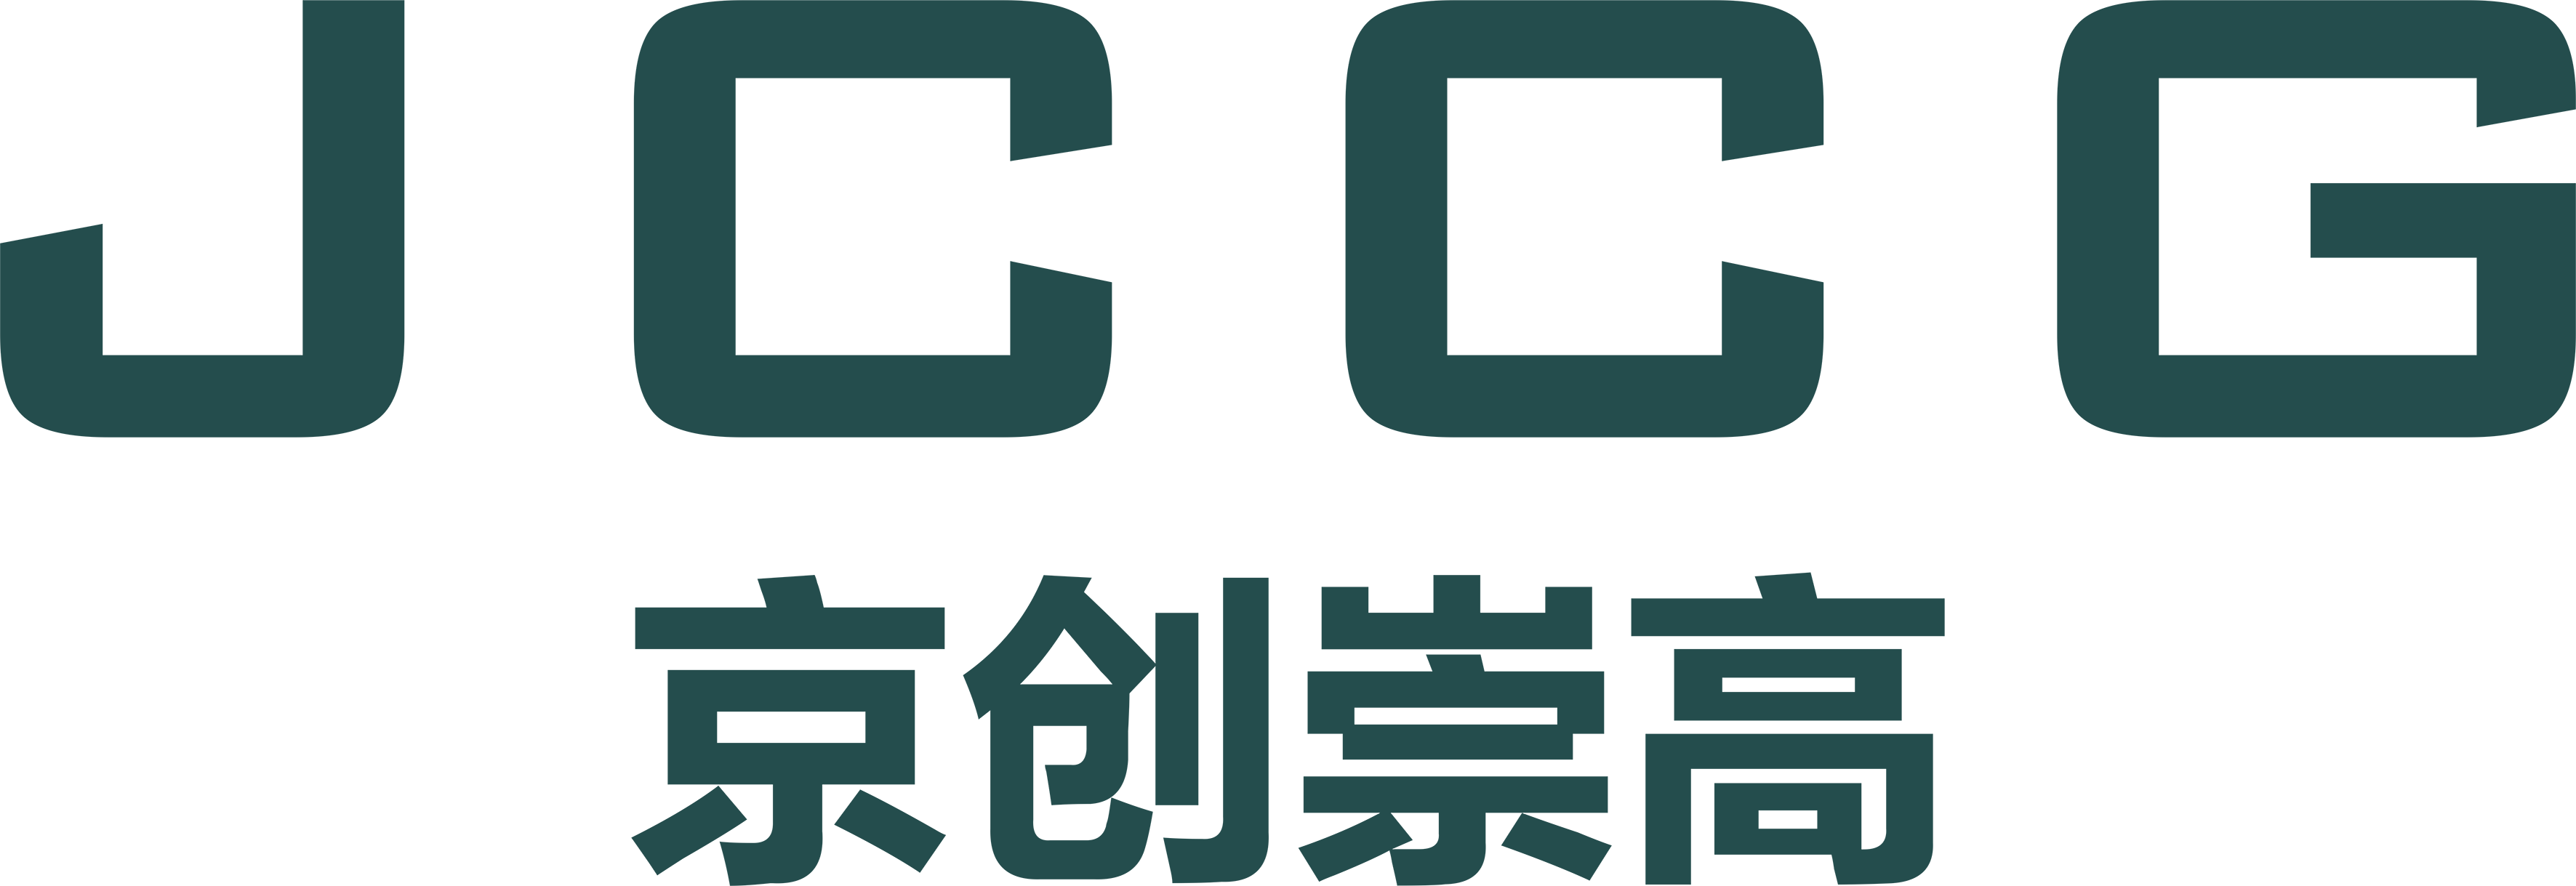 武汉凯发k8国际有限公司品牌Logo